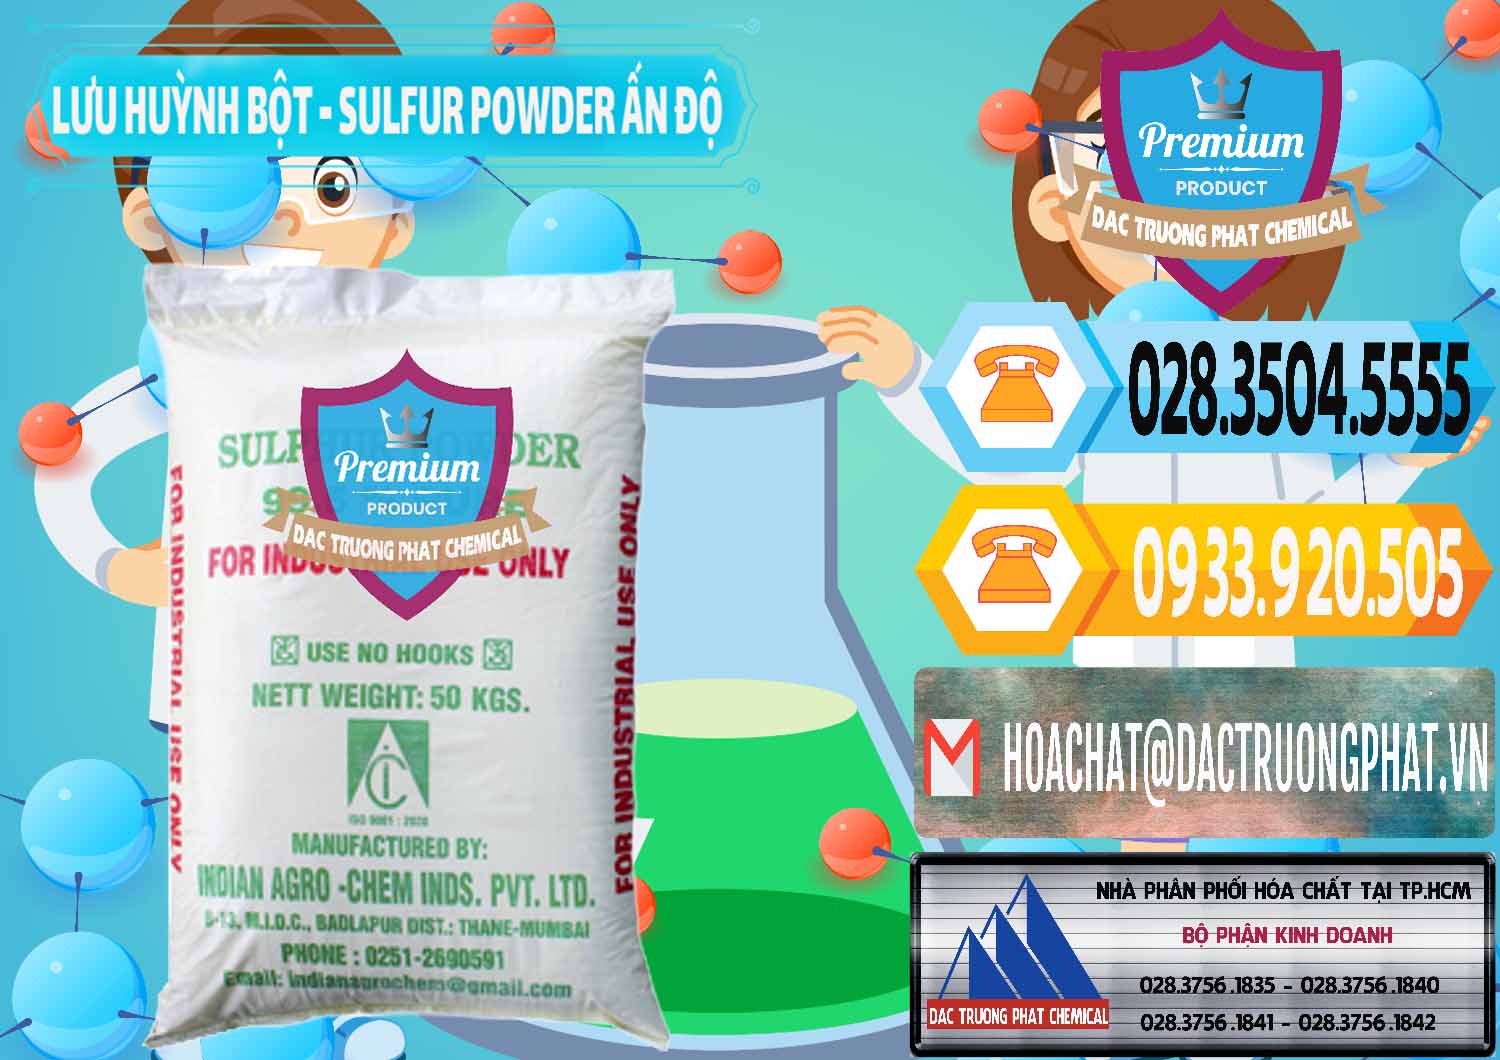 Công ty chuyên phân phối _ bán Lưu huỳnh Bột - Sulfur Powder Ấn Độ India - 0347 - Cty chuyên nhập khẩu _ cung cấp hóa chất tại TP.HCM - hoachattayrua.net